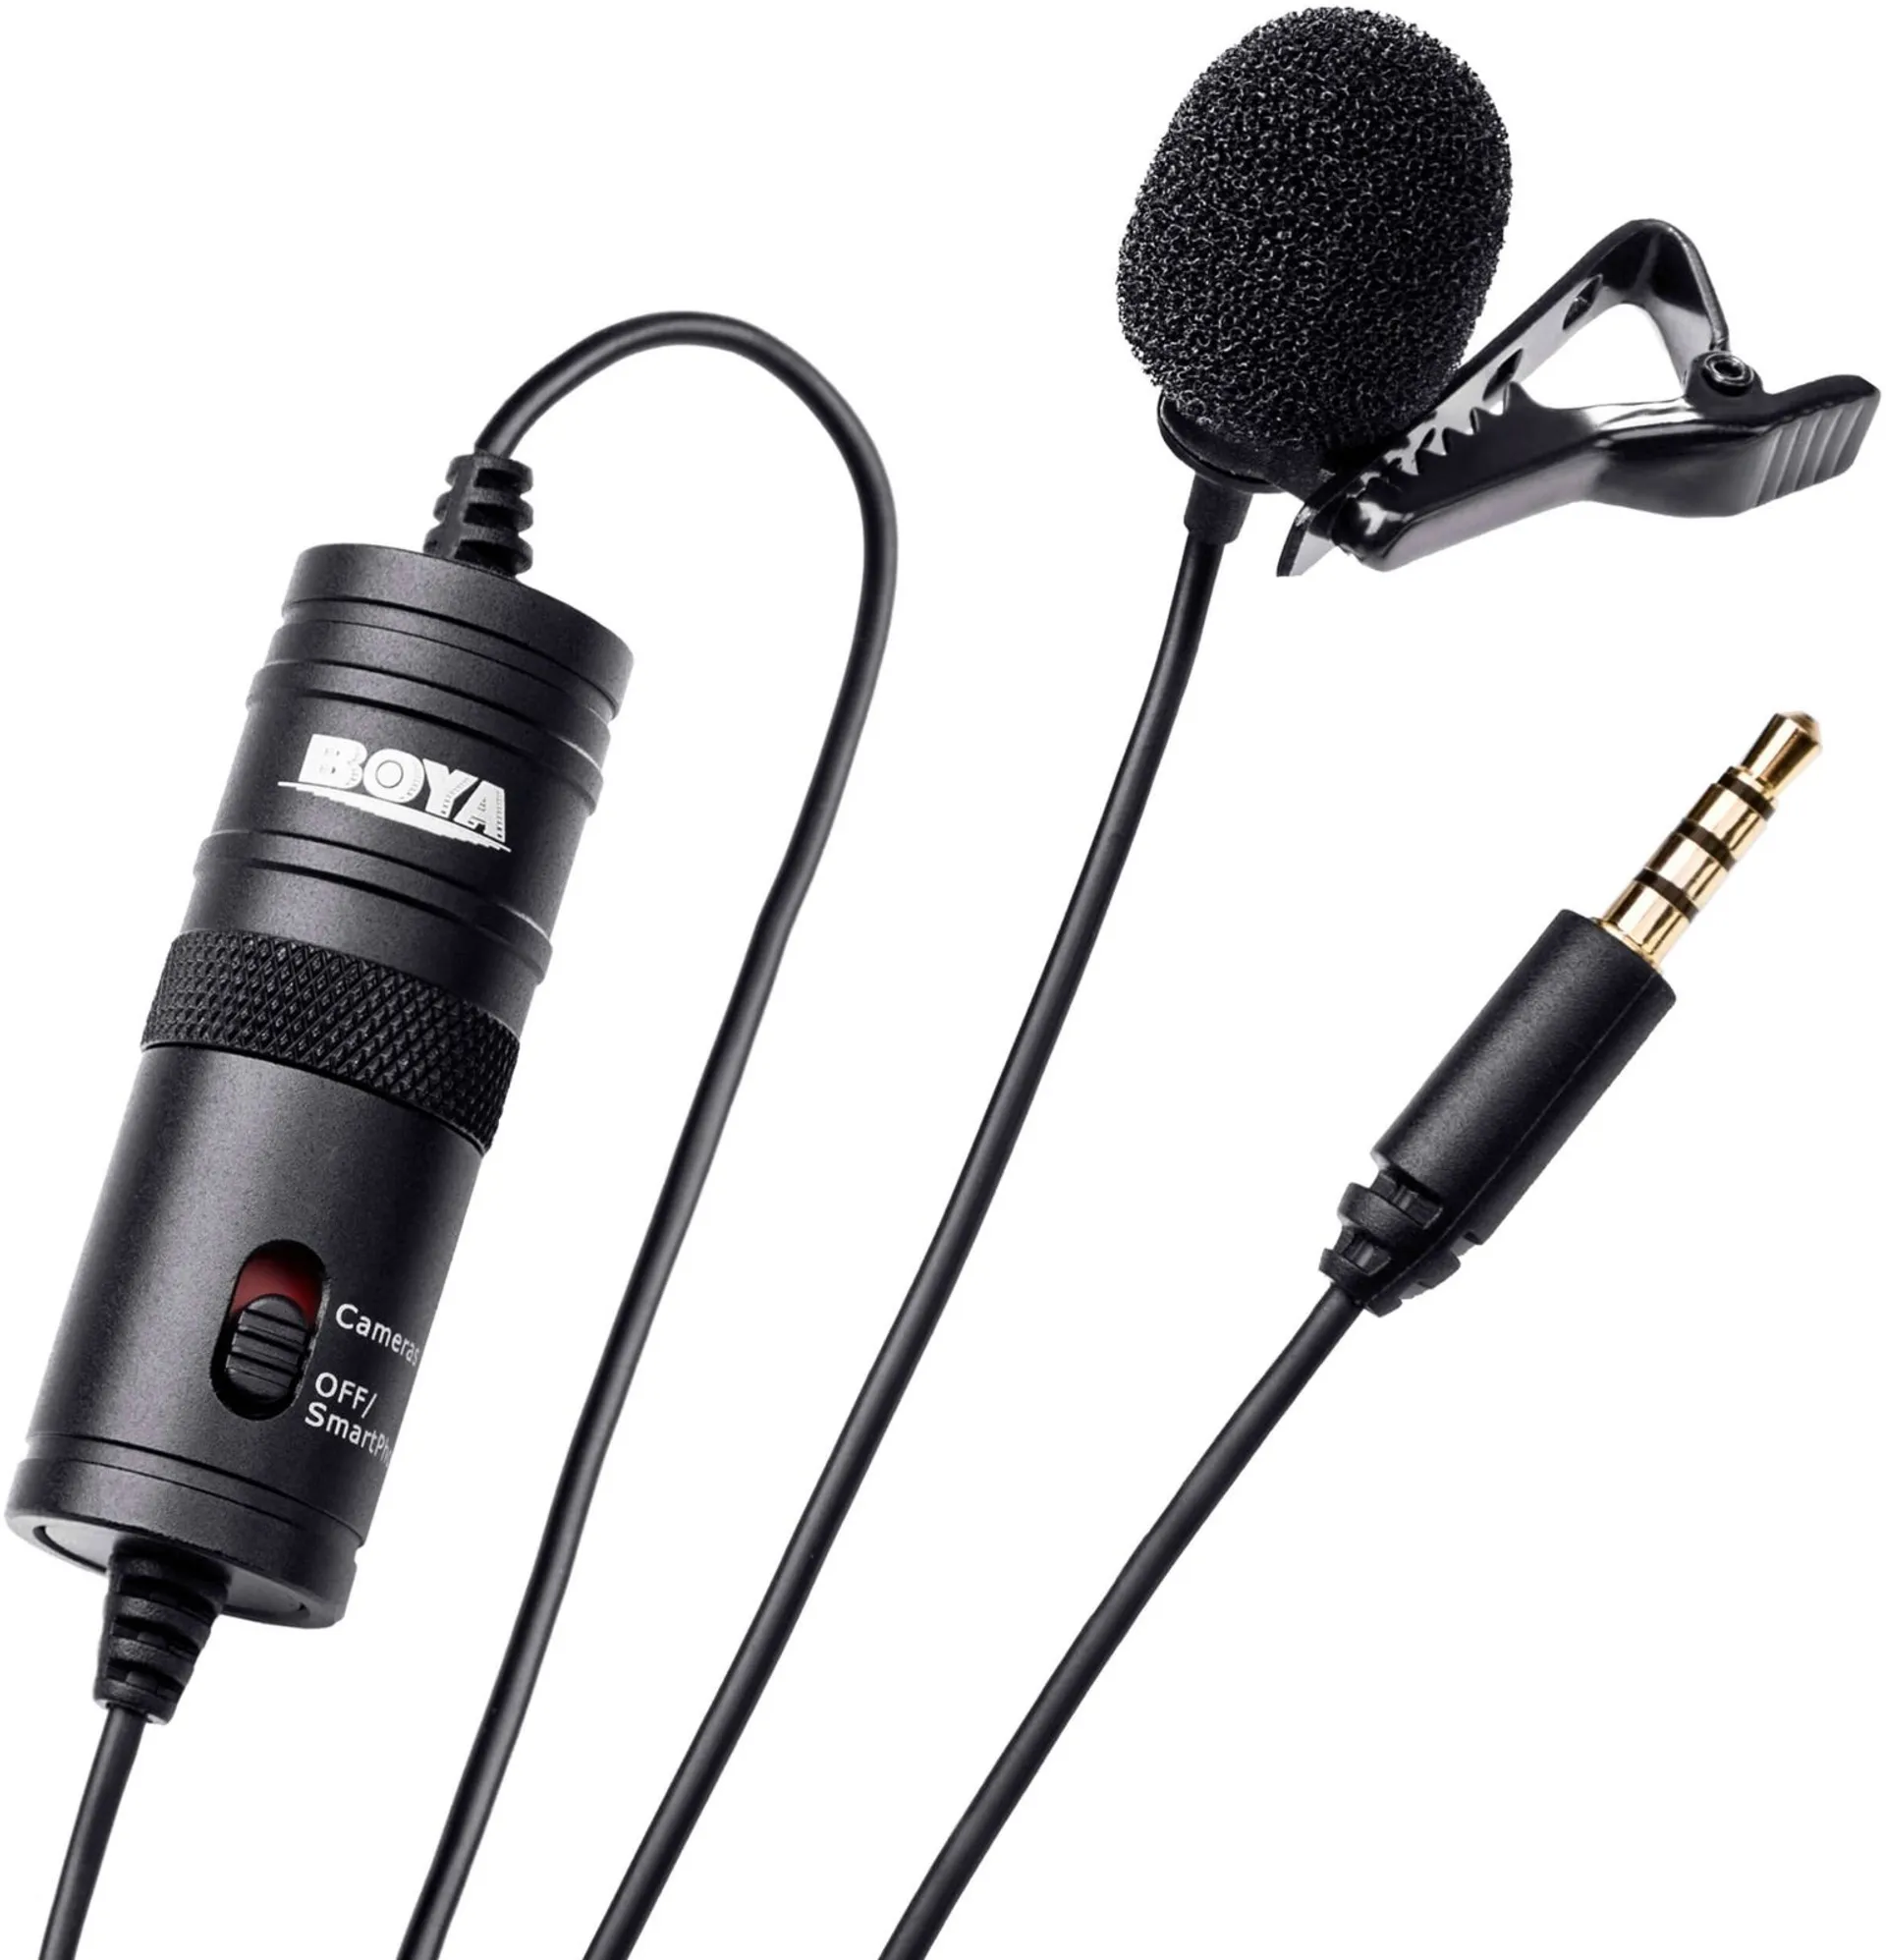 Boya mikrofoni  BY-M1 Lavallier 3,5mm - 1